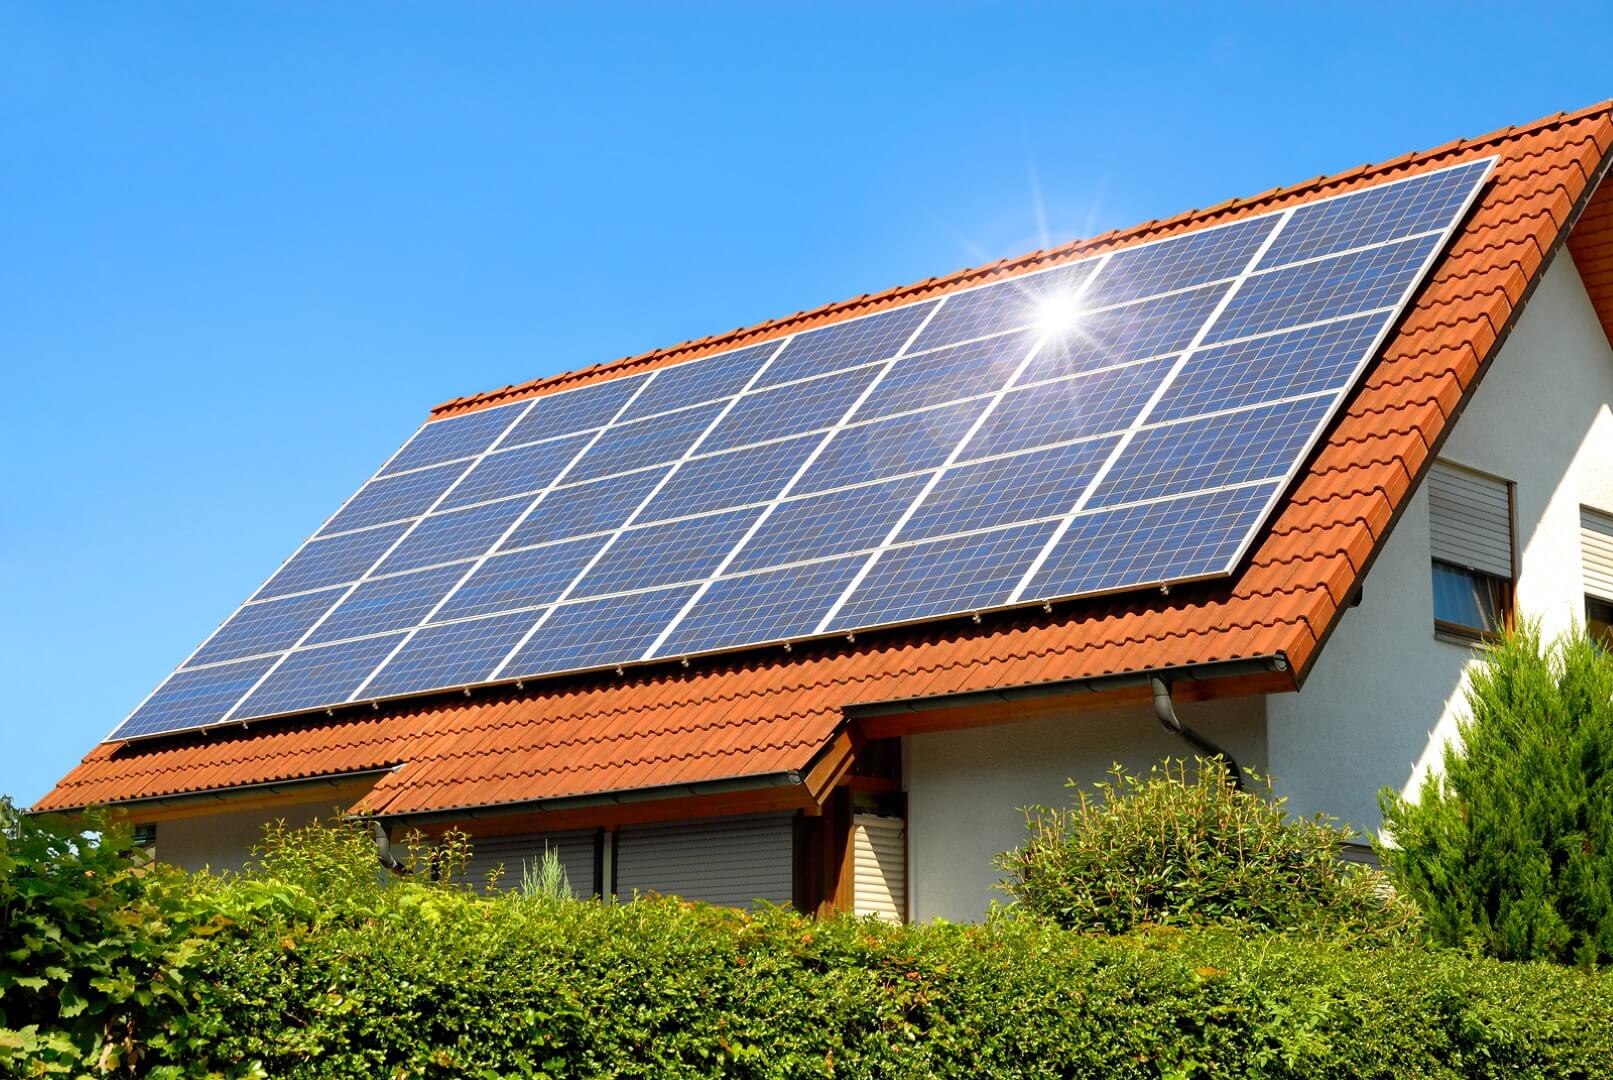 солнечные панели, «зеленая» энергетика, утилизация, льготы, экология